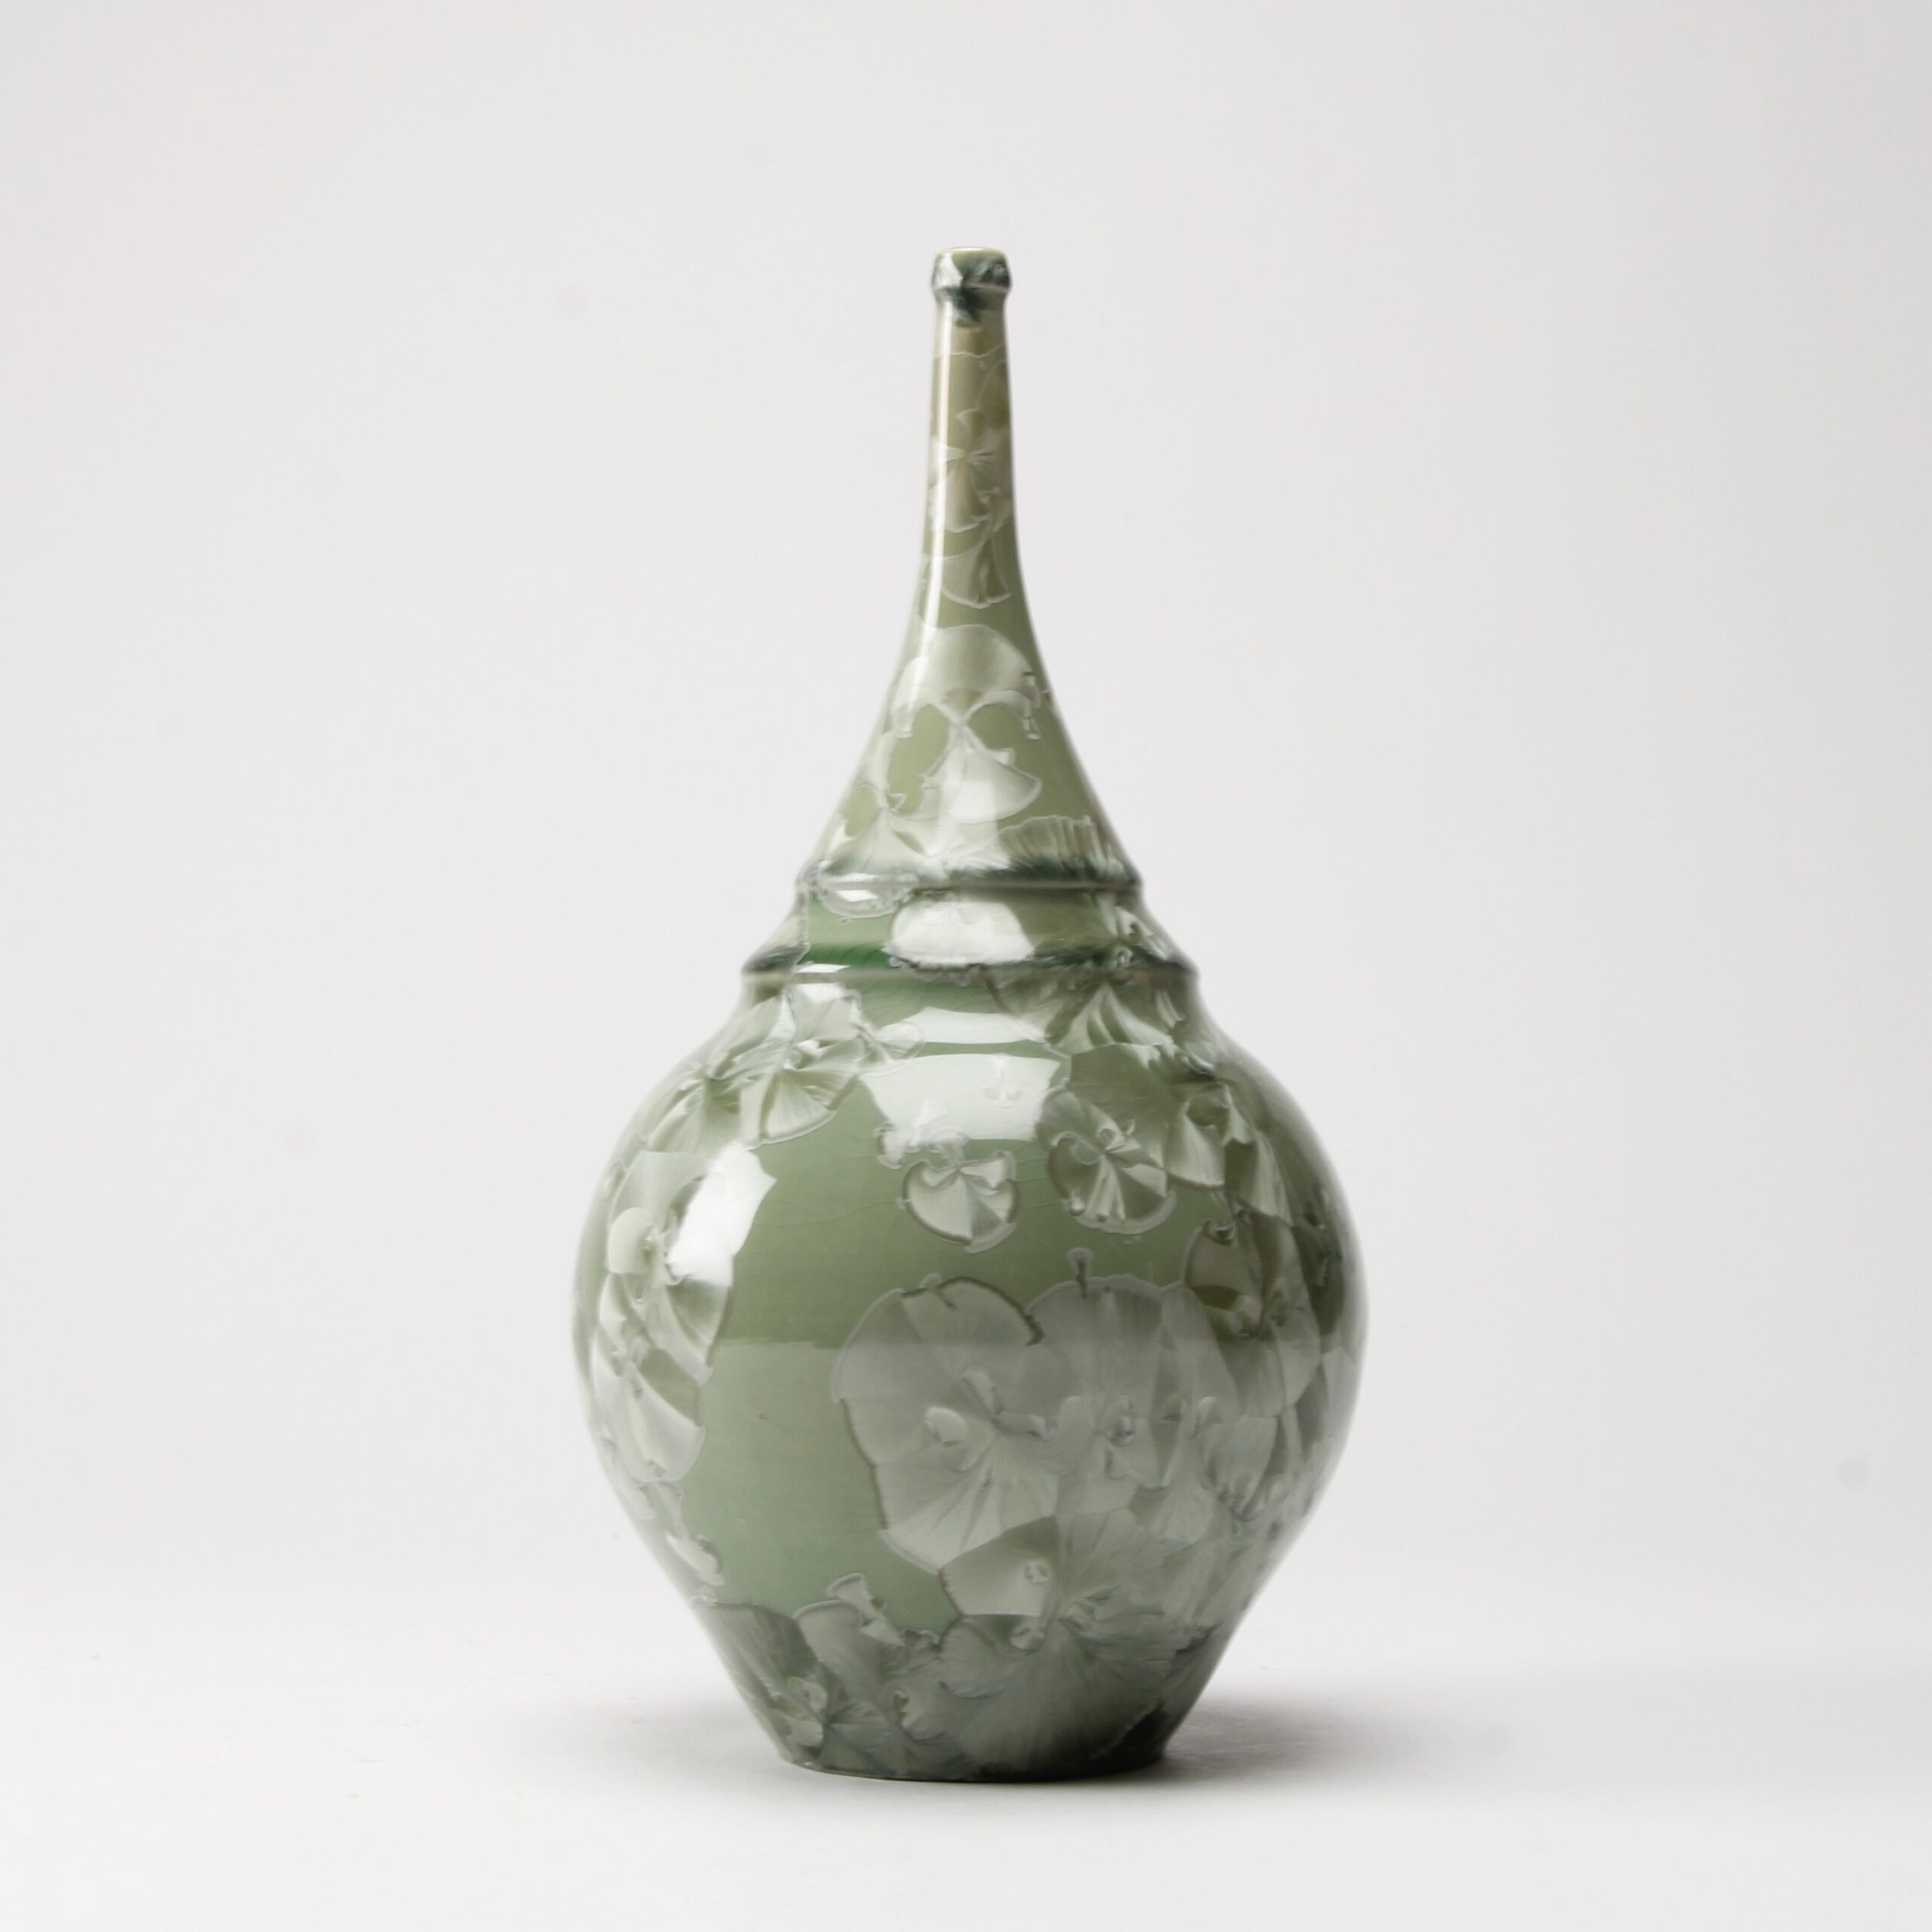 Yumiko Katsuya: Gold on Green Long Neck Vase Product Image 2 of 4